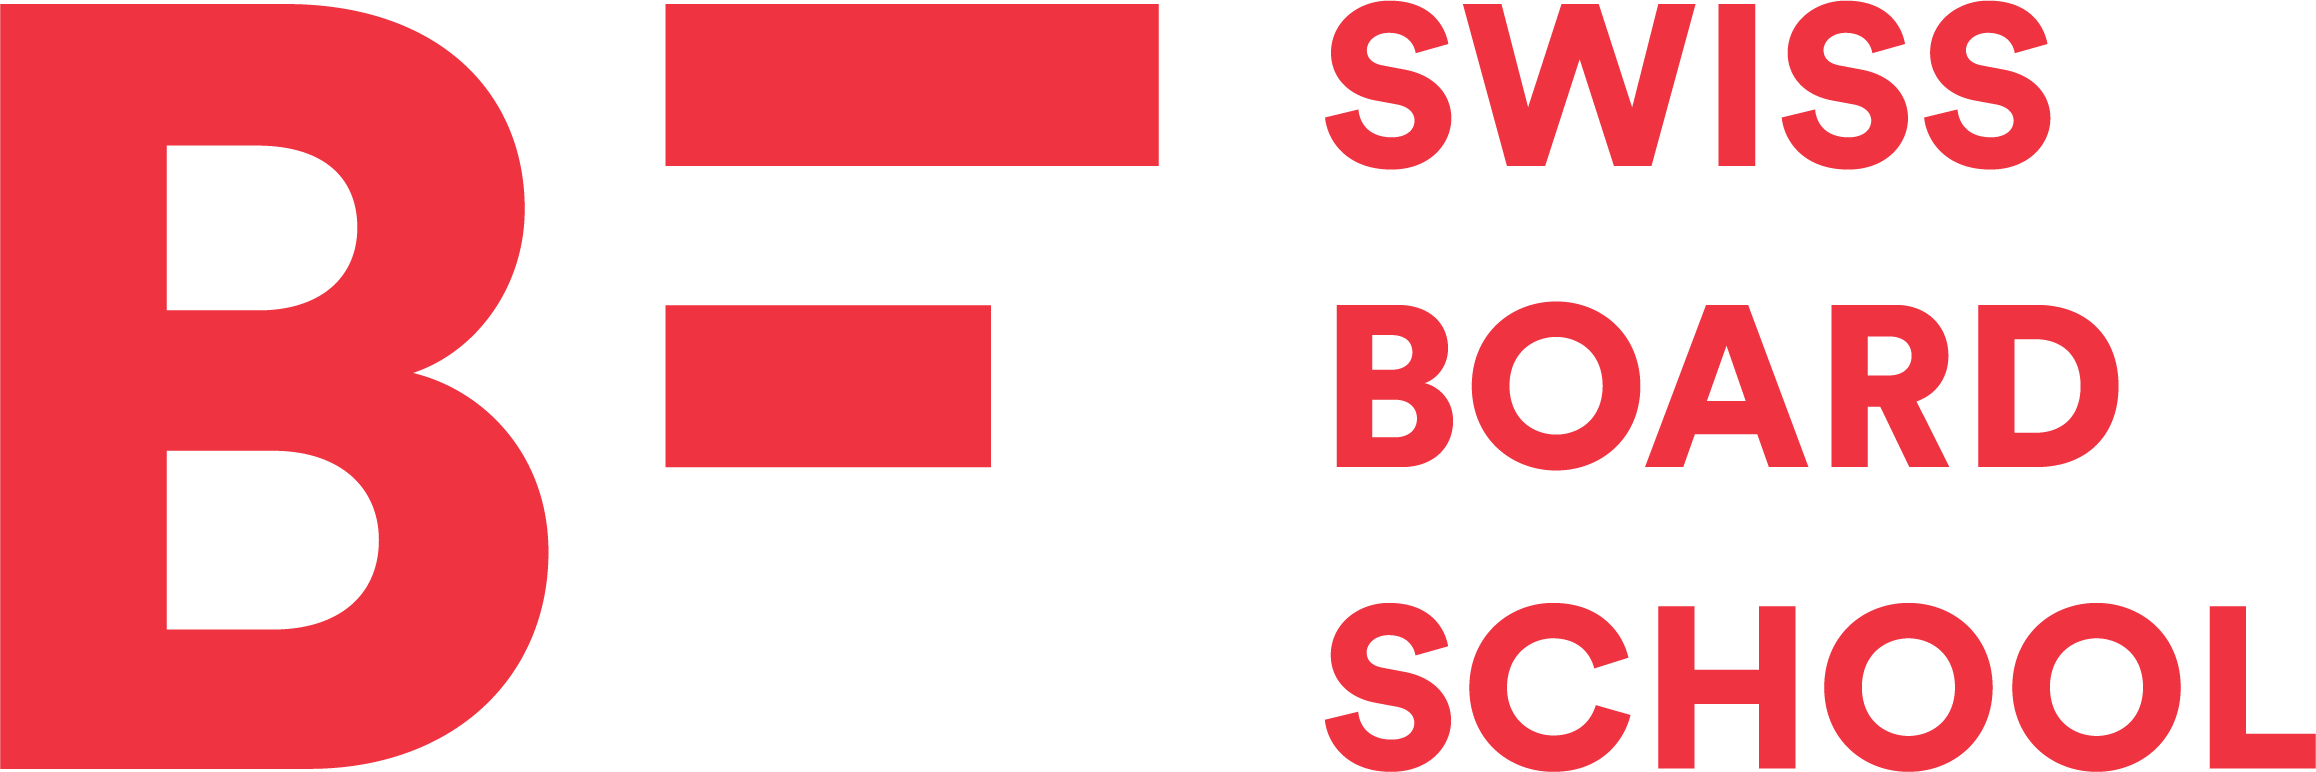 Swiss Board School